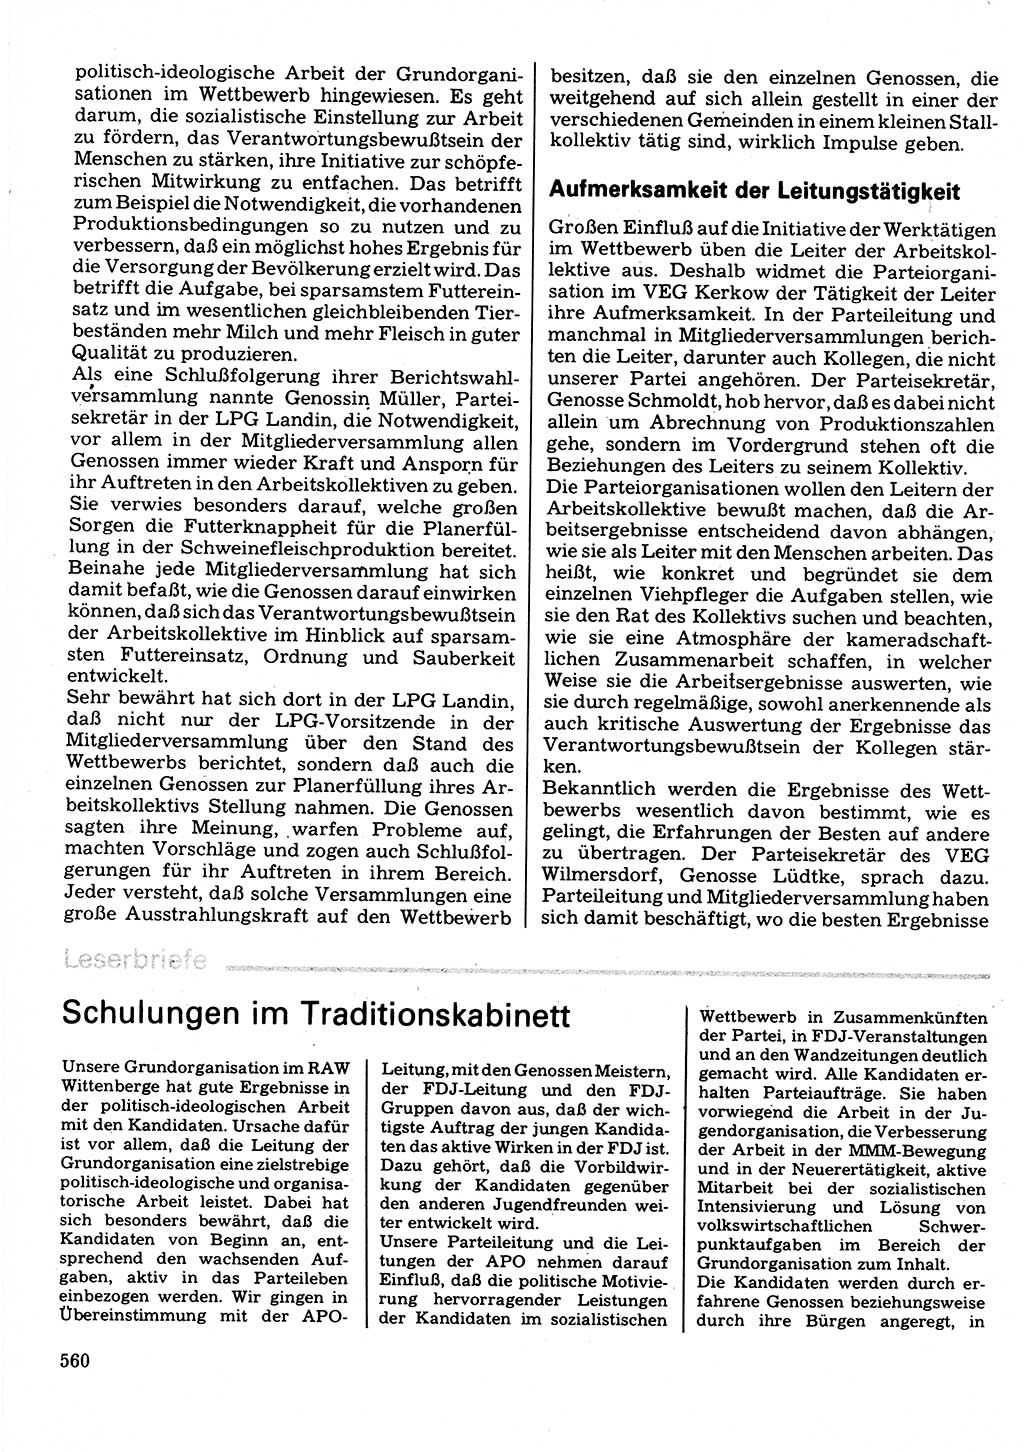 Neuer Weg (NW), Organ des Zentralkomitees (ZK) der SED (Sozialistische Einheitspartei Deutschlands) für Fragen des Parteilebens, 32. Jahrgang [Deutsche Demokratische Republik (DDR)] 1977, Seite 560 (NW ZK SED DDR 1977, S. 560)